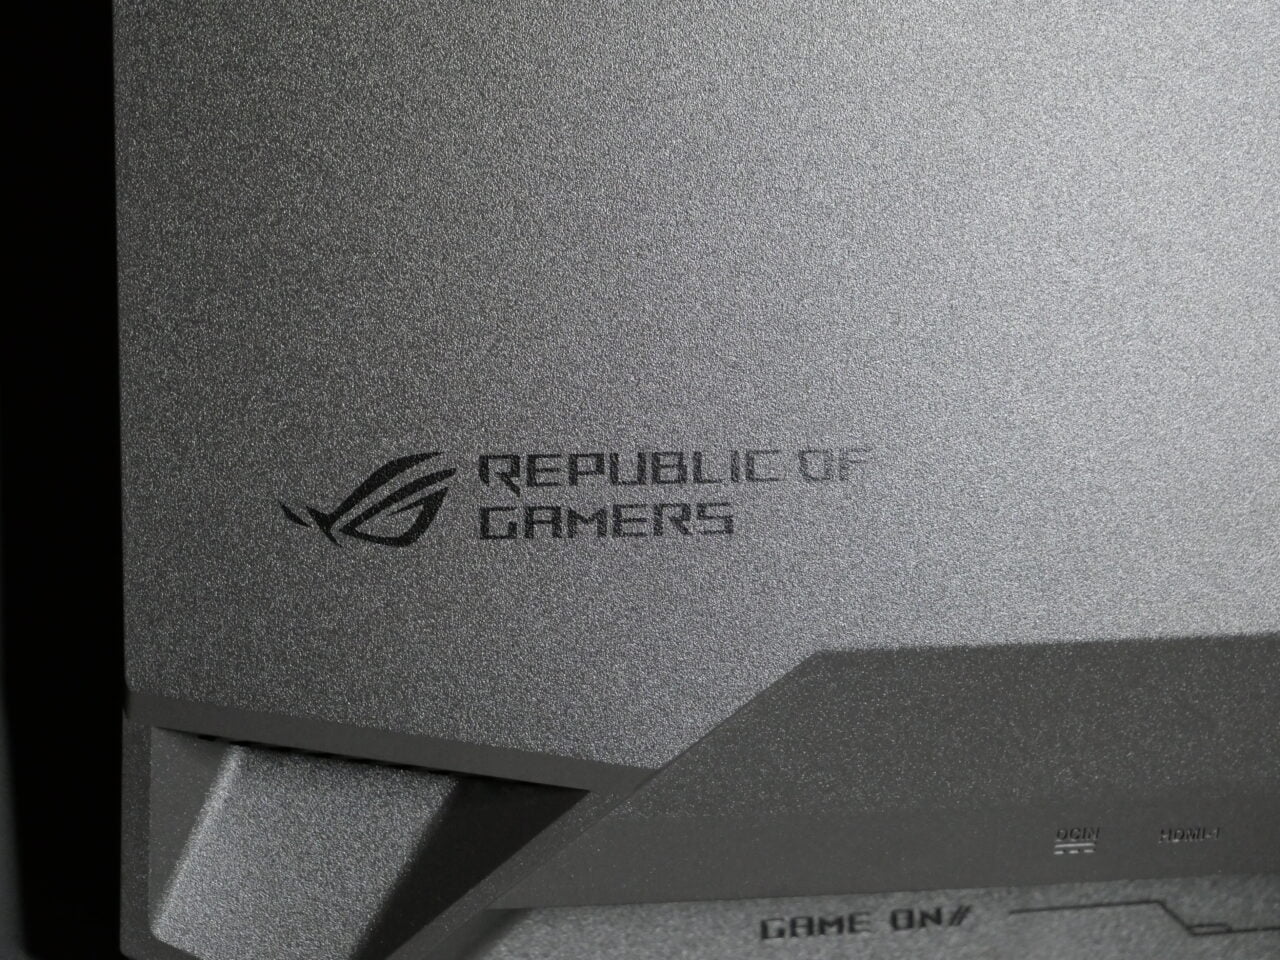 Zbliżenie na teksturę i logo "Republic of Gamers" na urządzeniu elektronicznym.